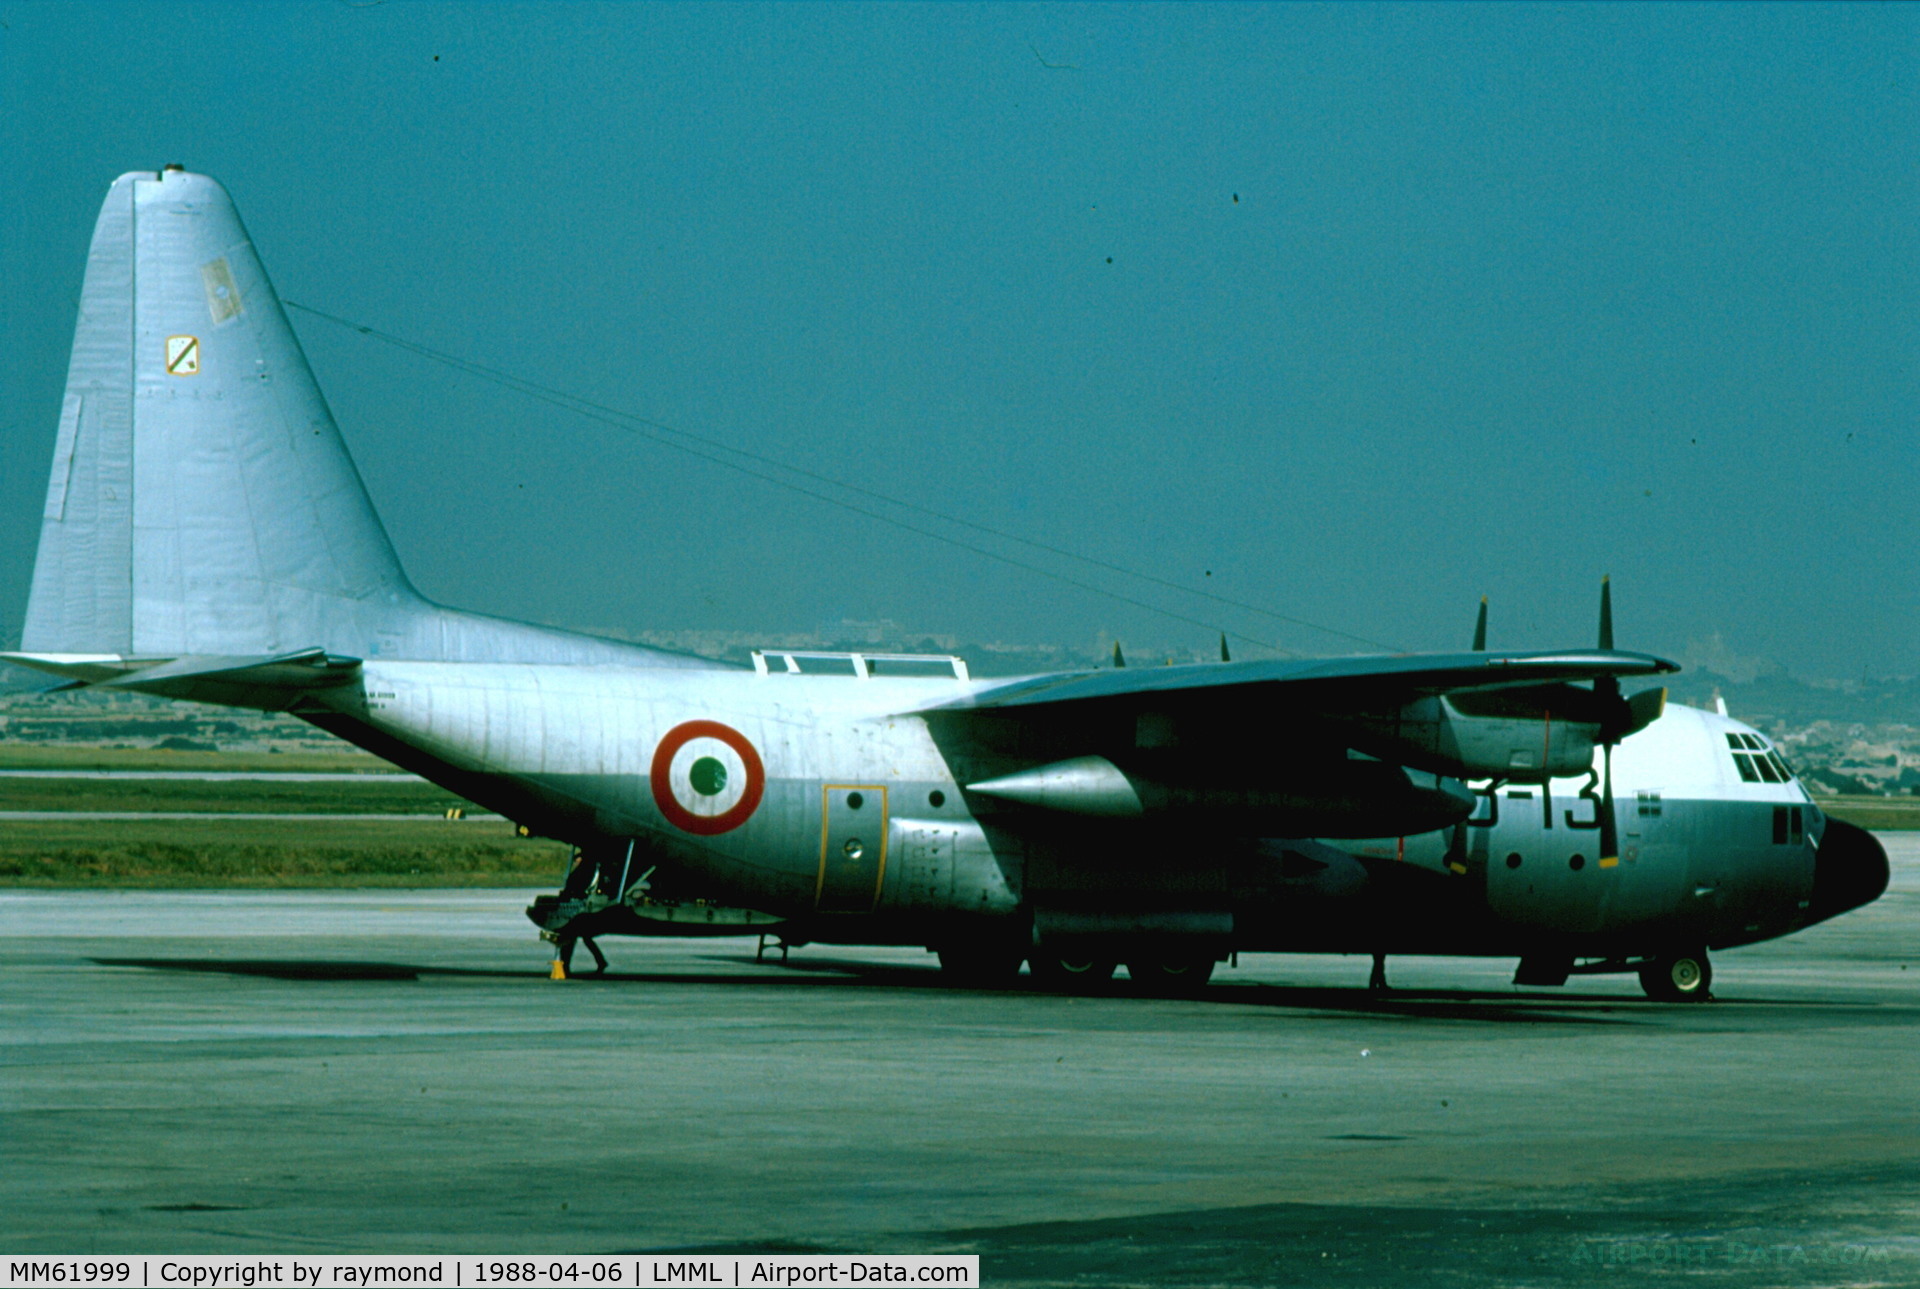 MM61999, Lockheed C-130H Hercules C/N 382-4495, Hercules MM61999/46-13 Italian Air Force